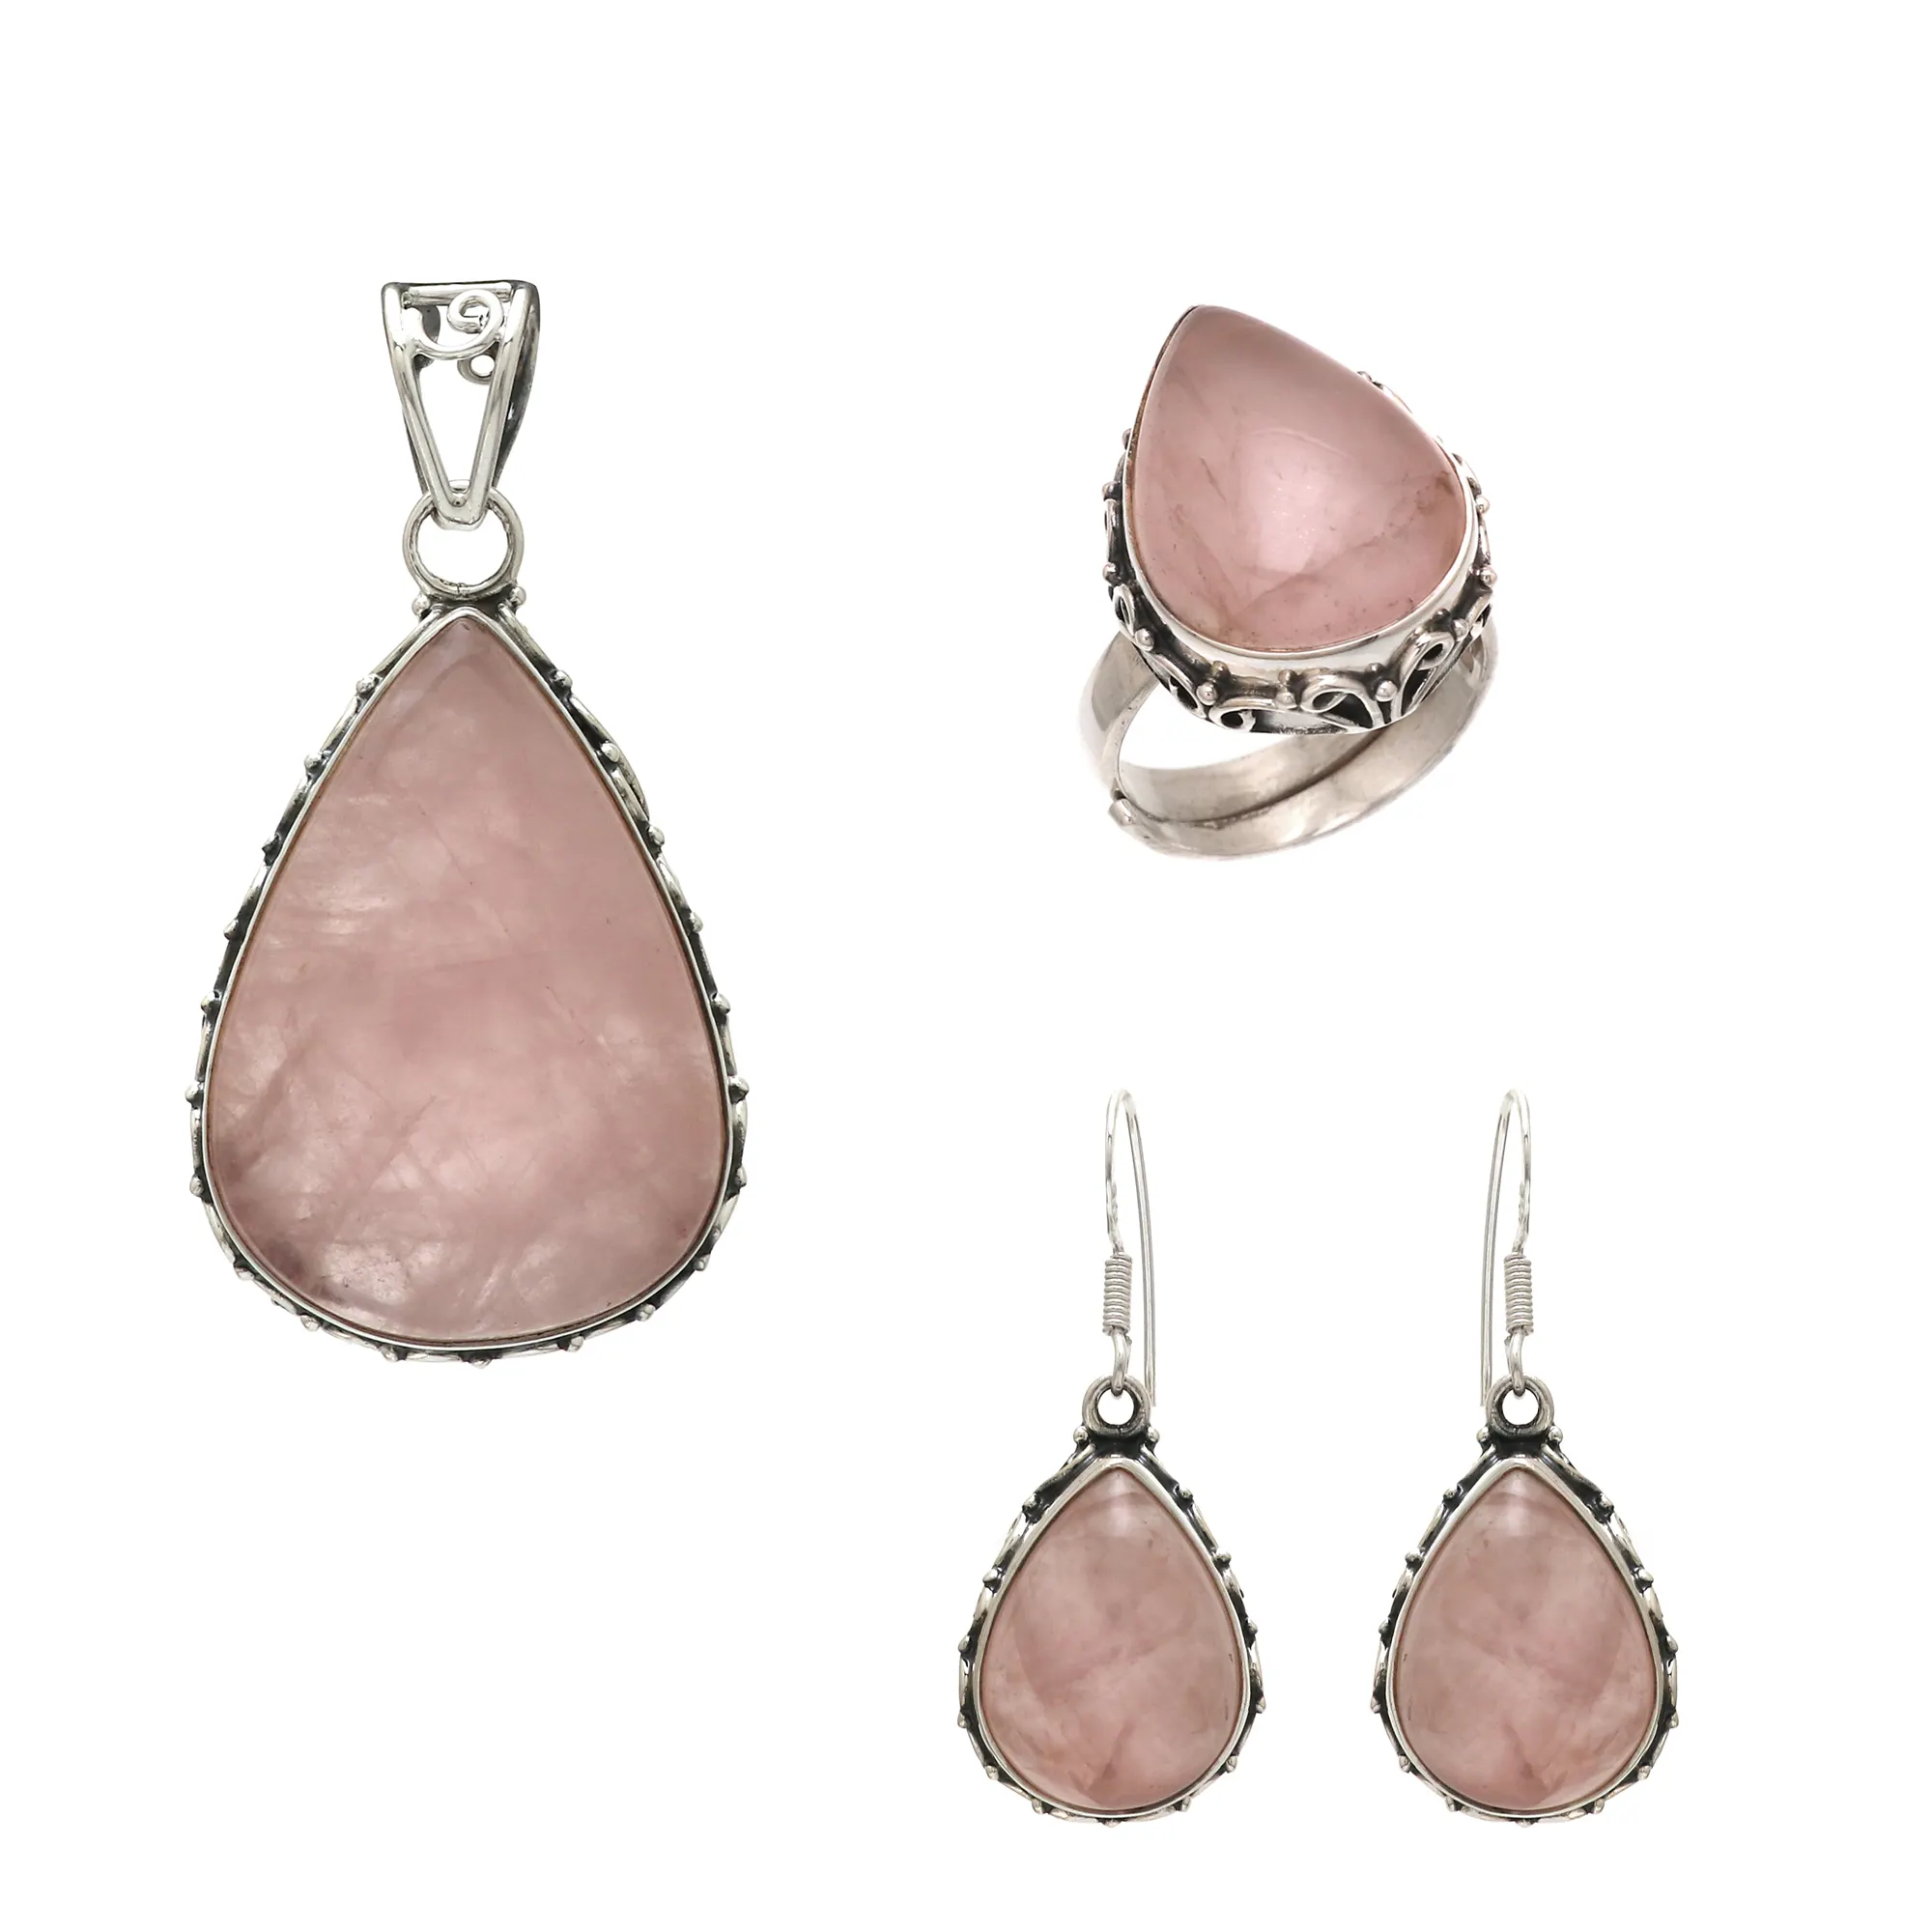 Conjuntos de joias de prata esterlina 925 de alta qualidade com pingente de quartzo rosa, brincos de pedra ajustável, anel com bandana ajustável, atacado